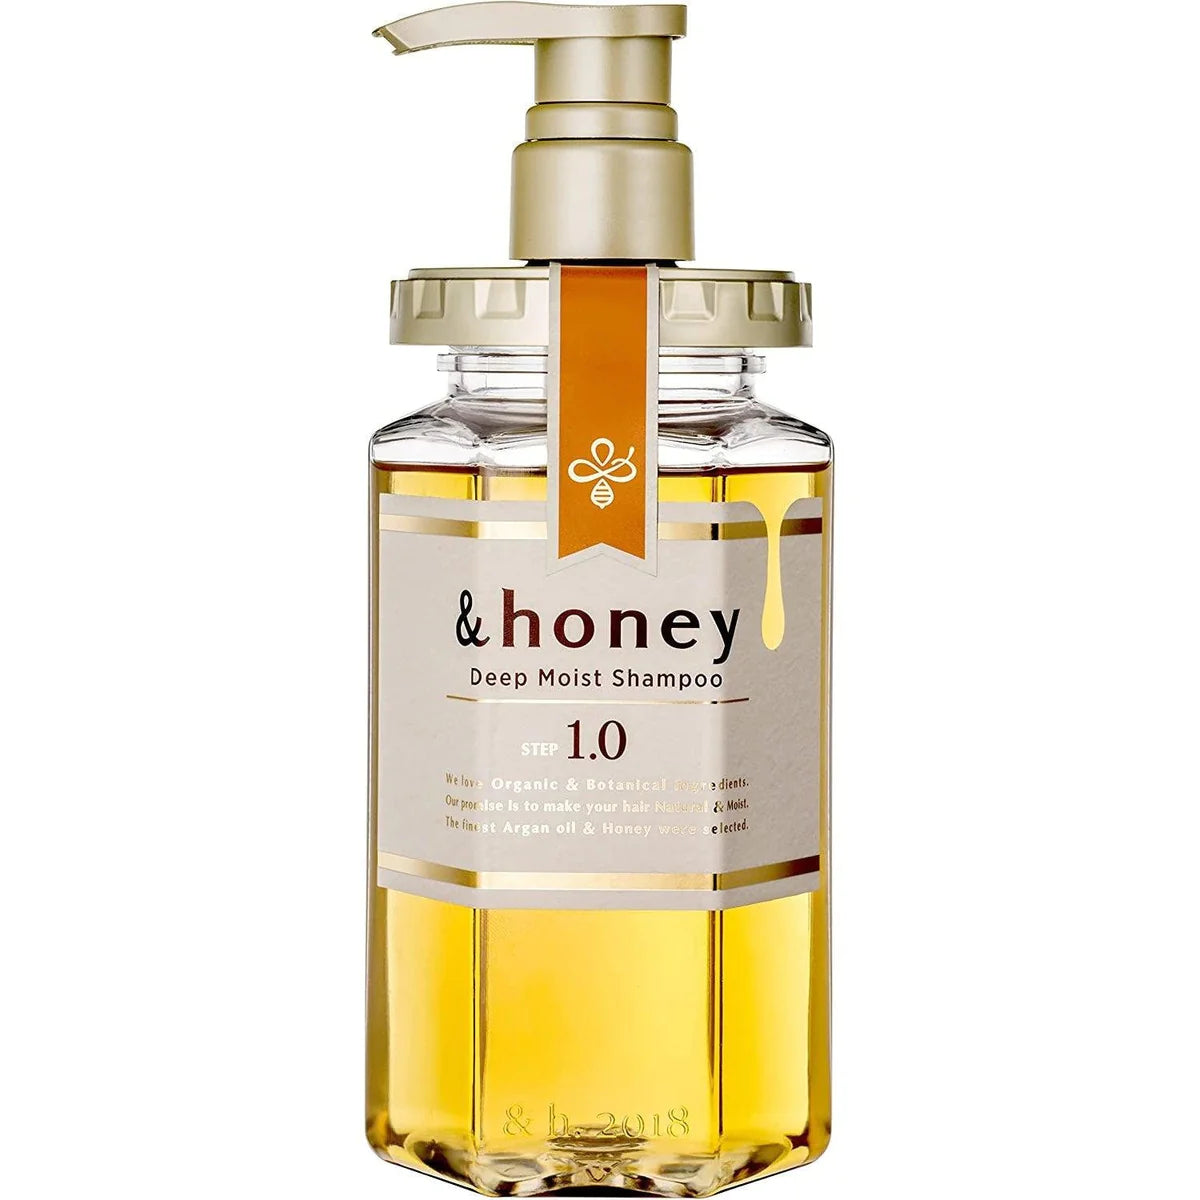 &honey Deep Moist Shampoo 1.0 Peony Honey